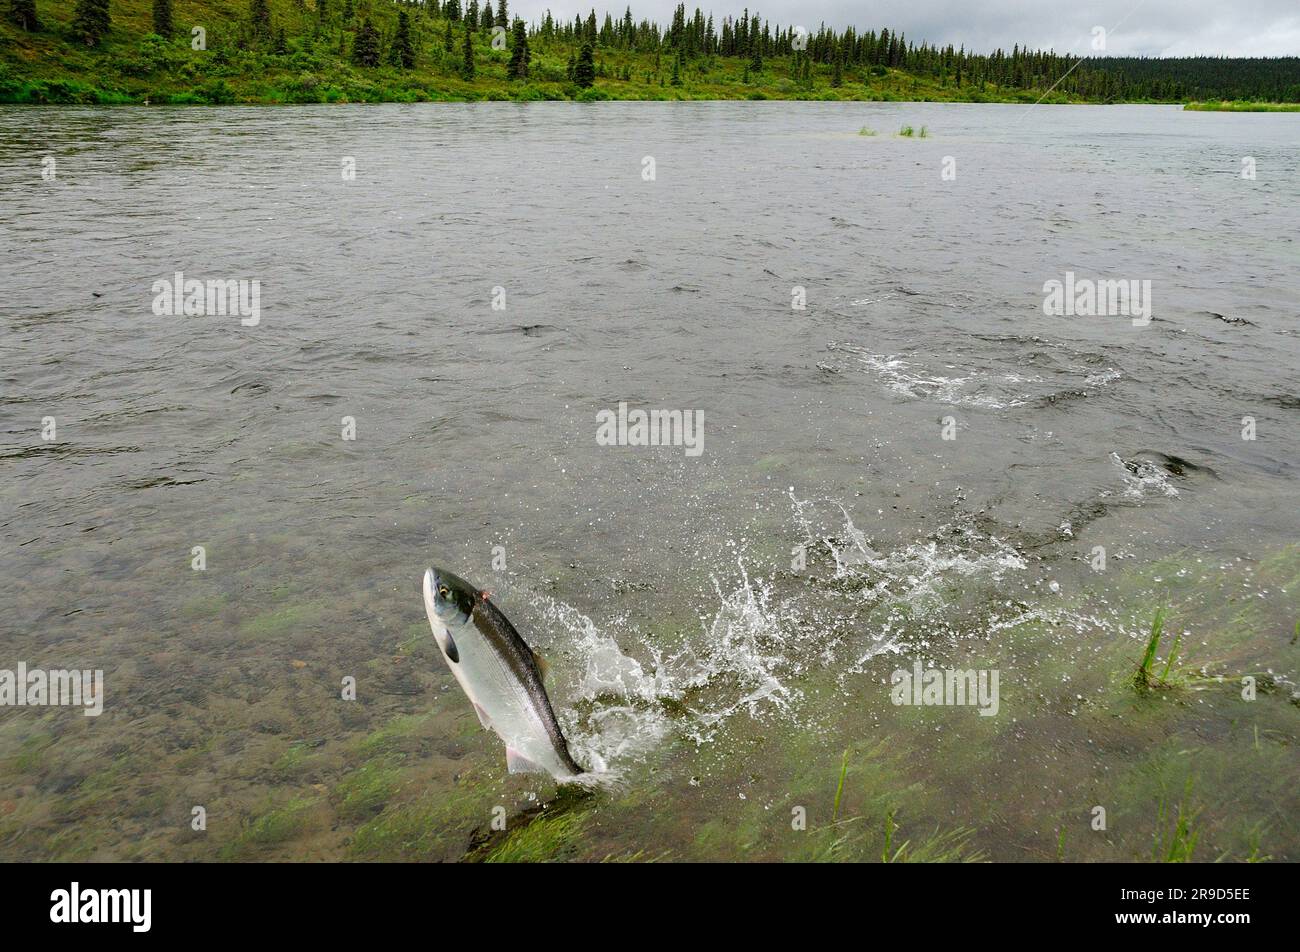 Sockeye salmon fighting Stock Photo